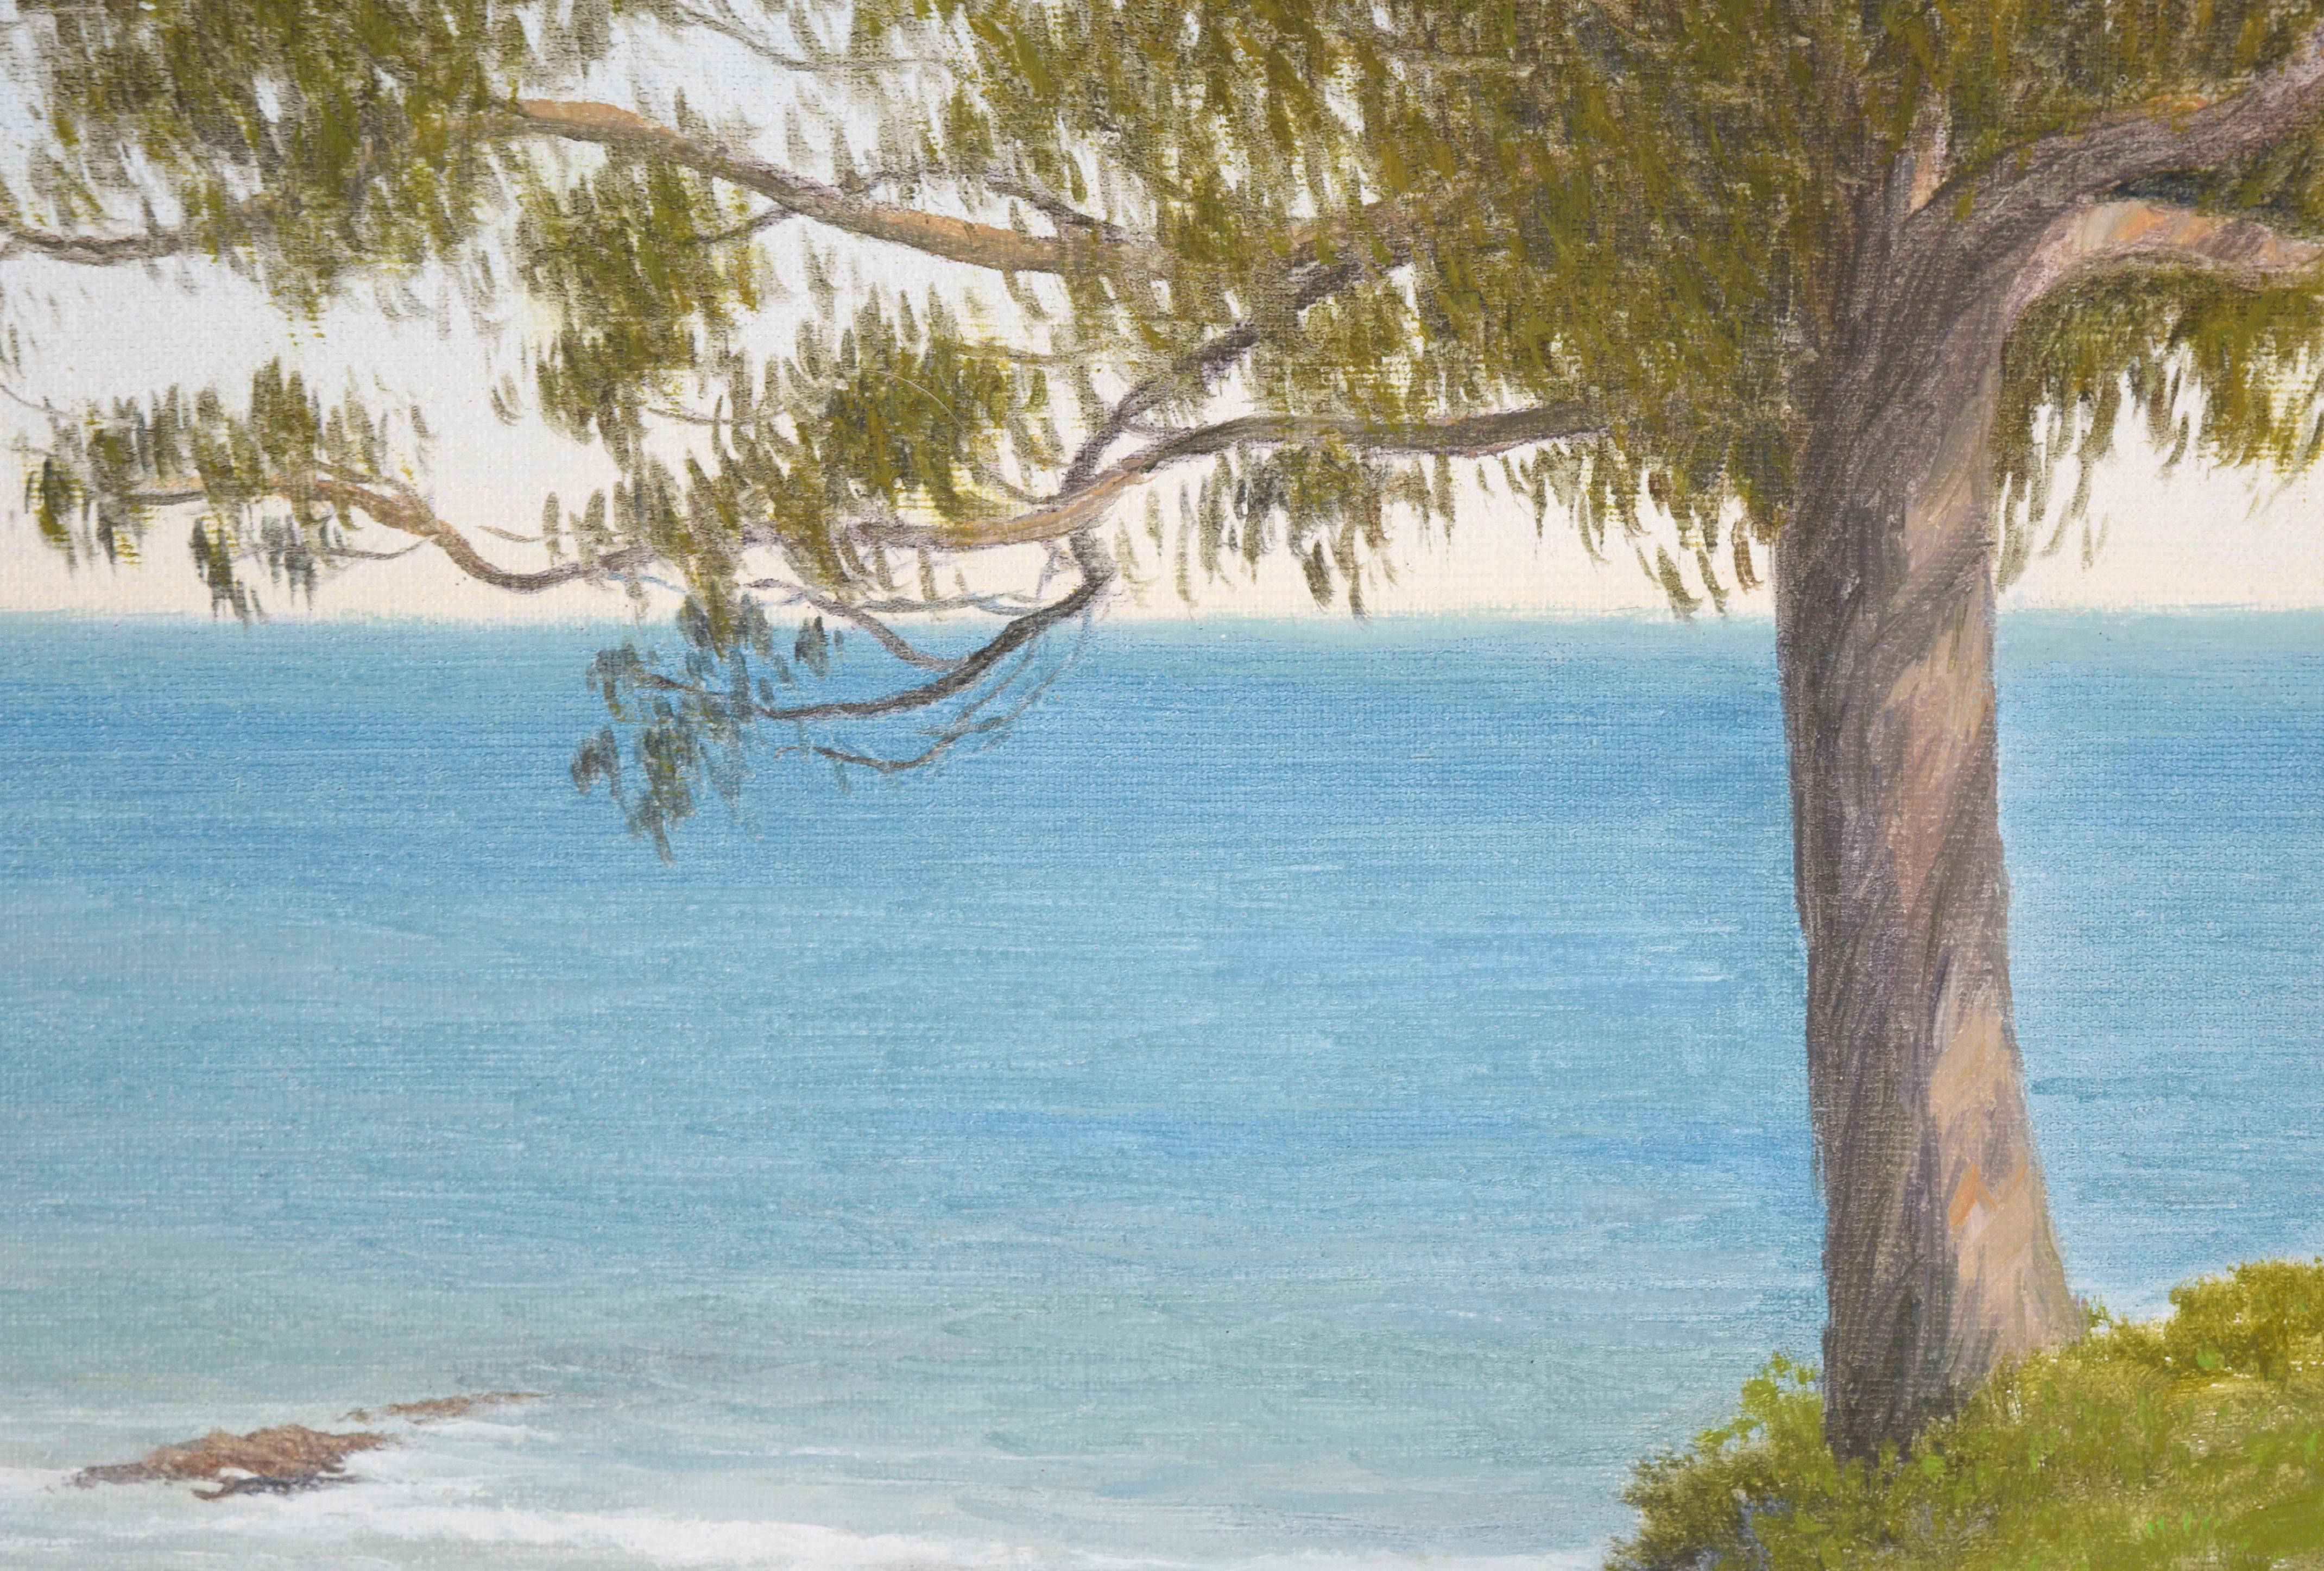 „West Cliff, Santa Cruz“ Küstenlandschaft in Öl auf Leinen

Ölgemälde einer Strandlandschaft von Max Flandorfer (Amerikaner, geb. 1962). Ein großer Eukalyptusbaum steht am Rande einer Klippe mit Blick auf das Wasser. Die Klippe ist mit grünem Gras